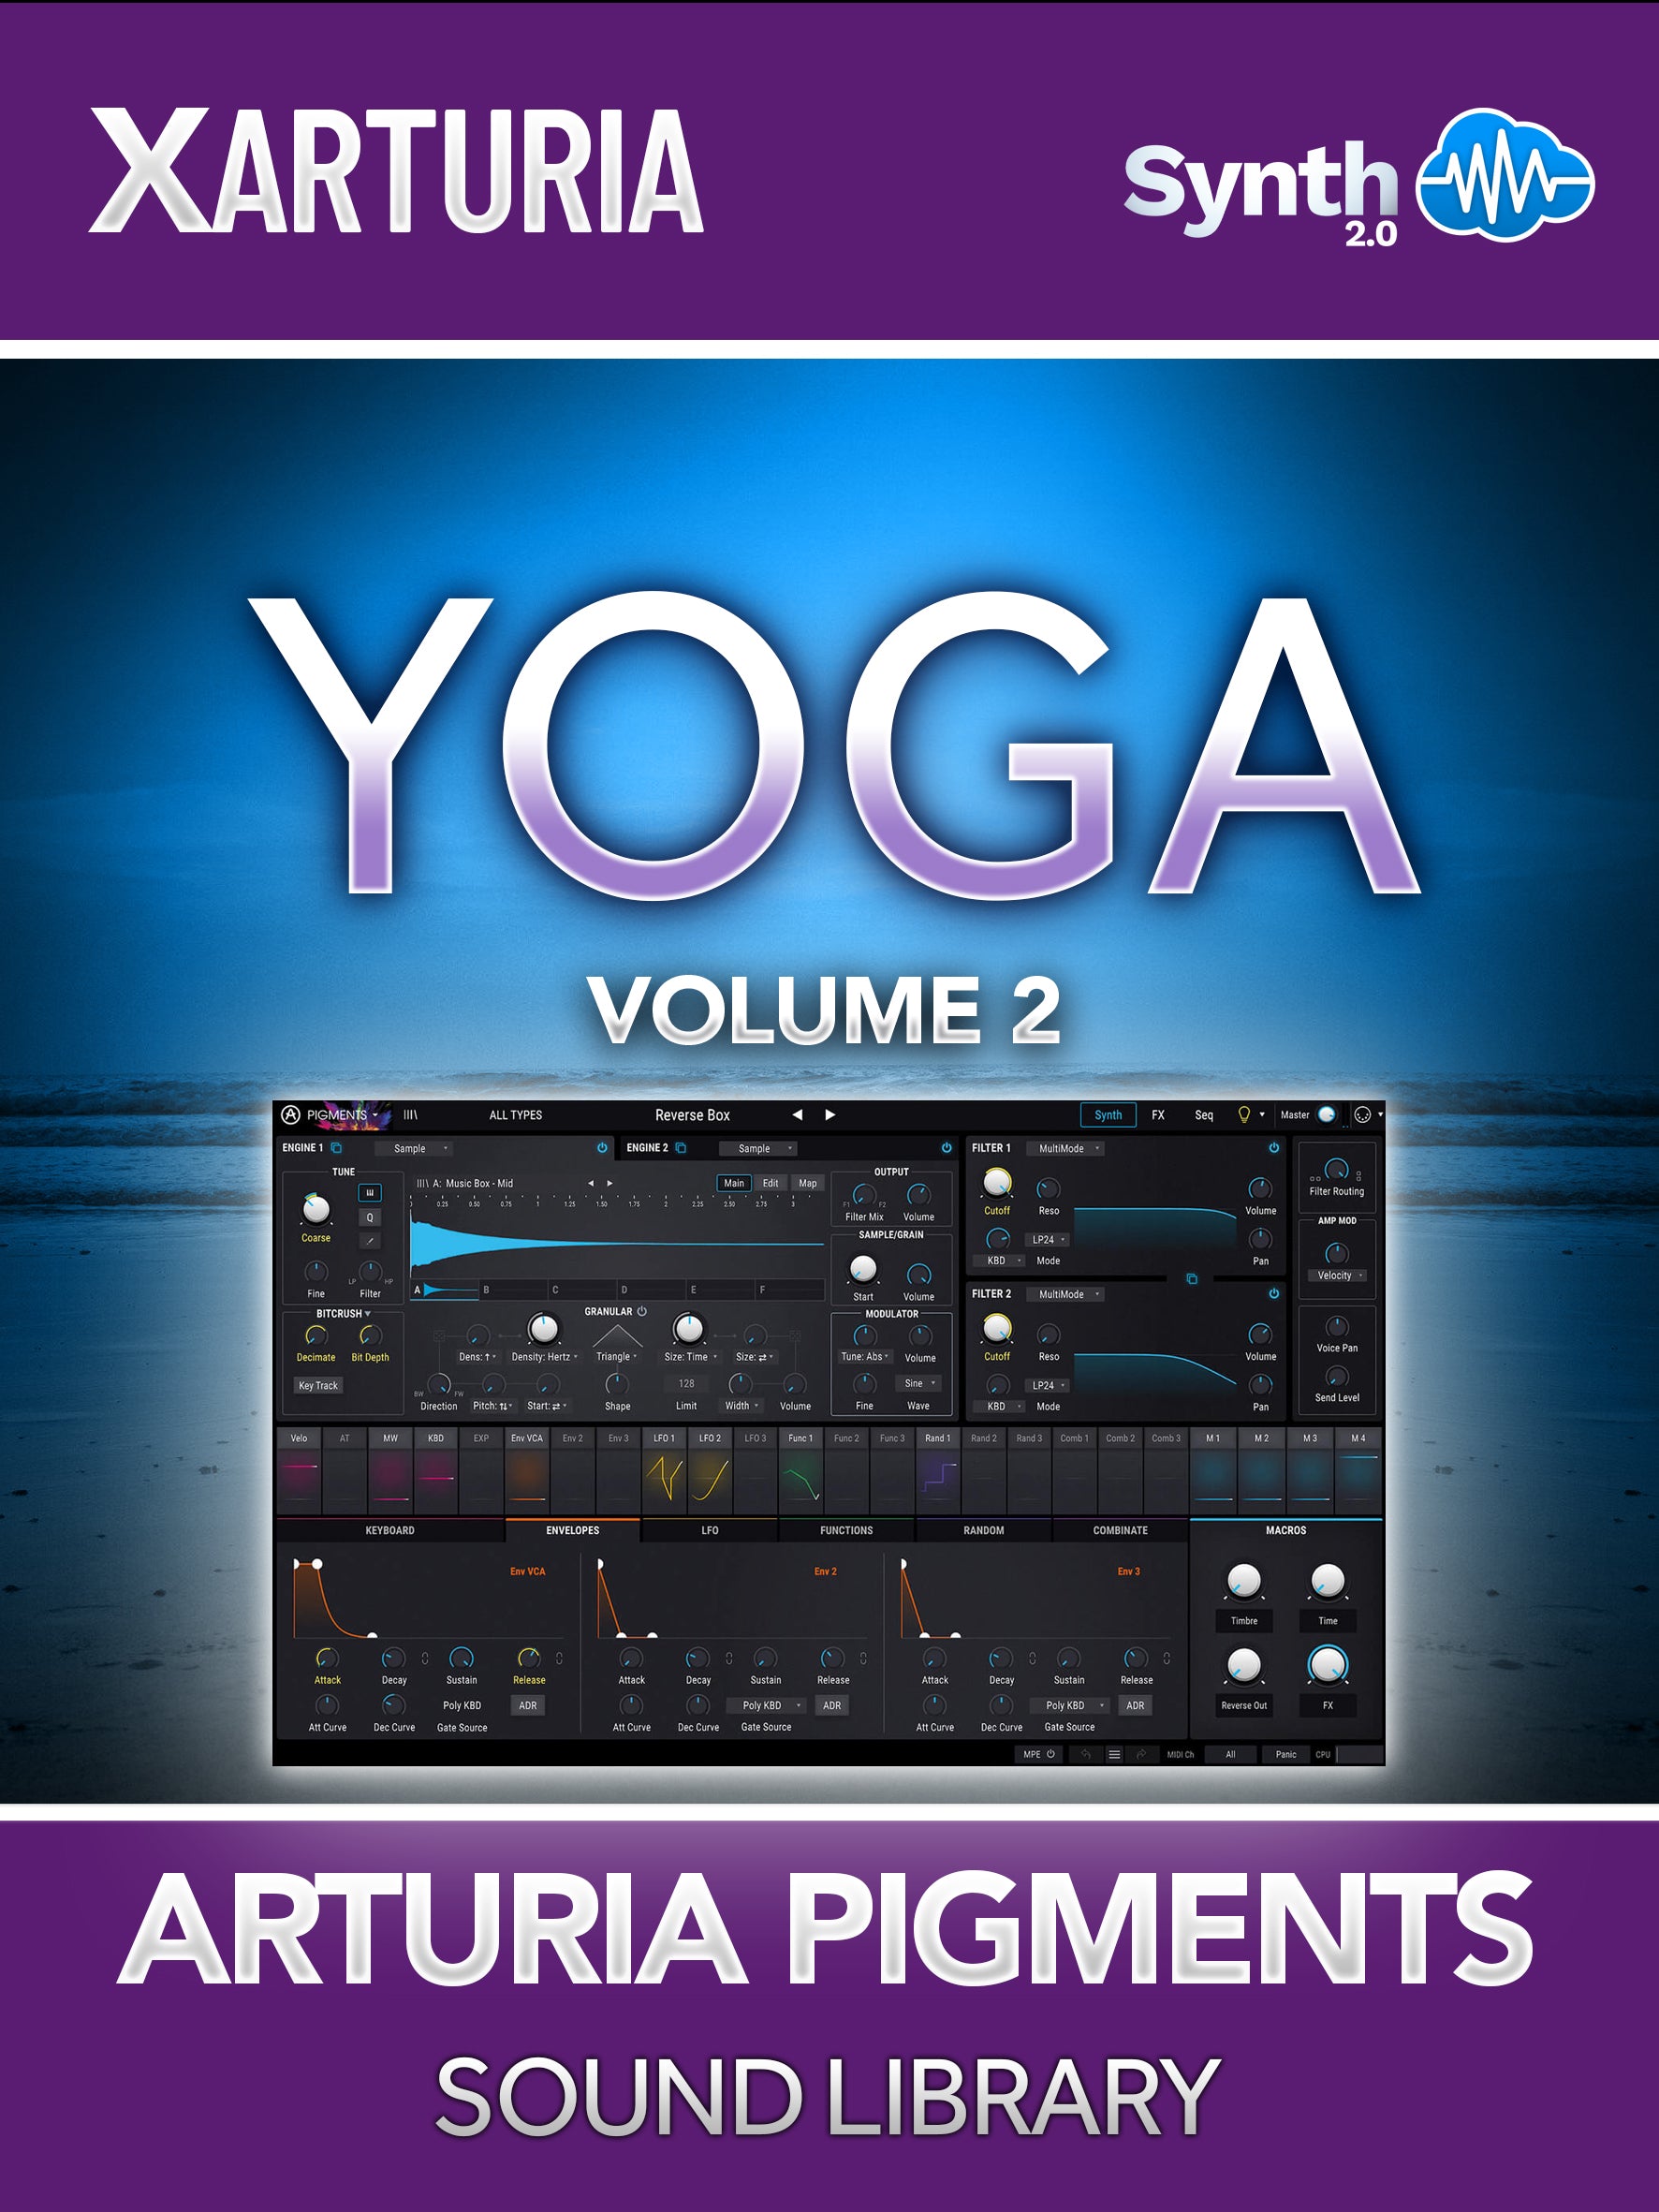 TPL020 - Yoga V2 - Arturia Pigments 3 ( 65 presets )